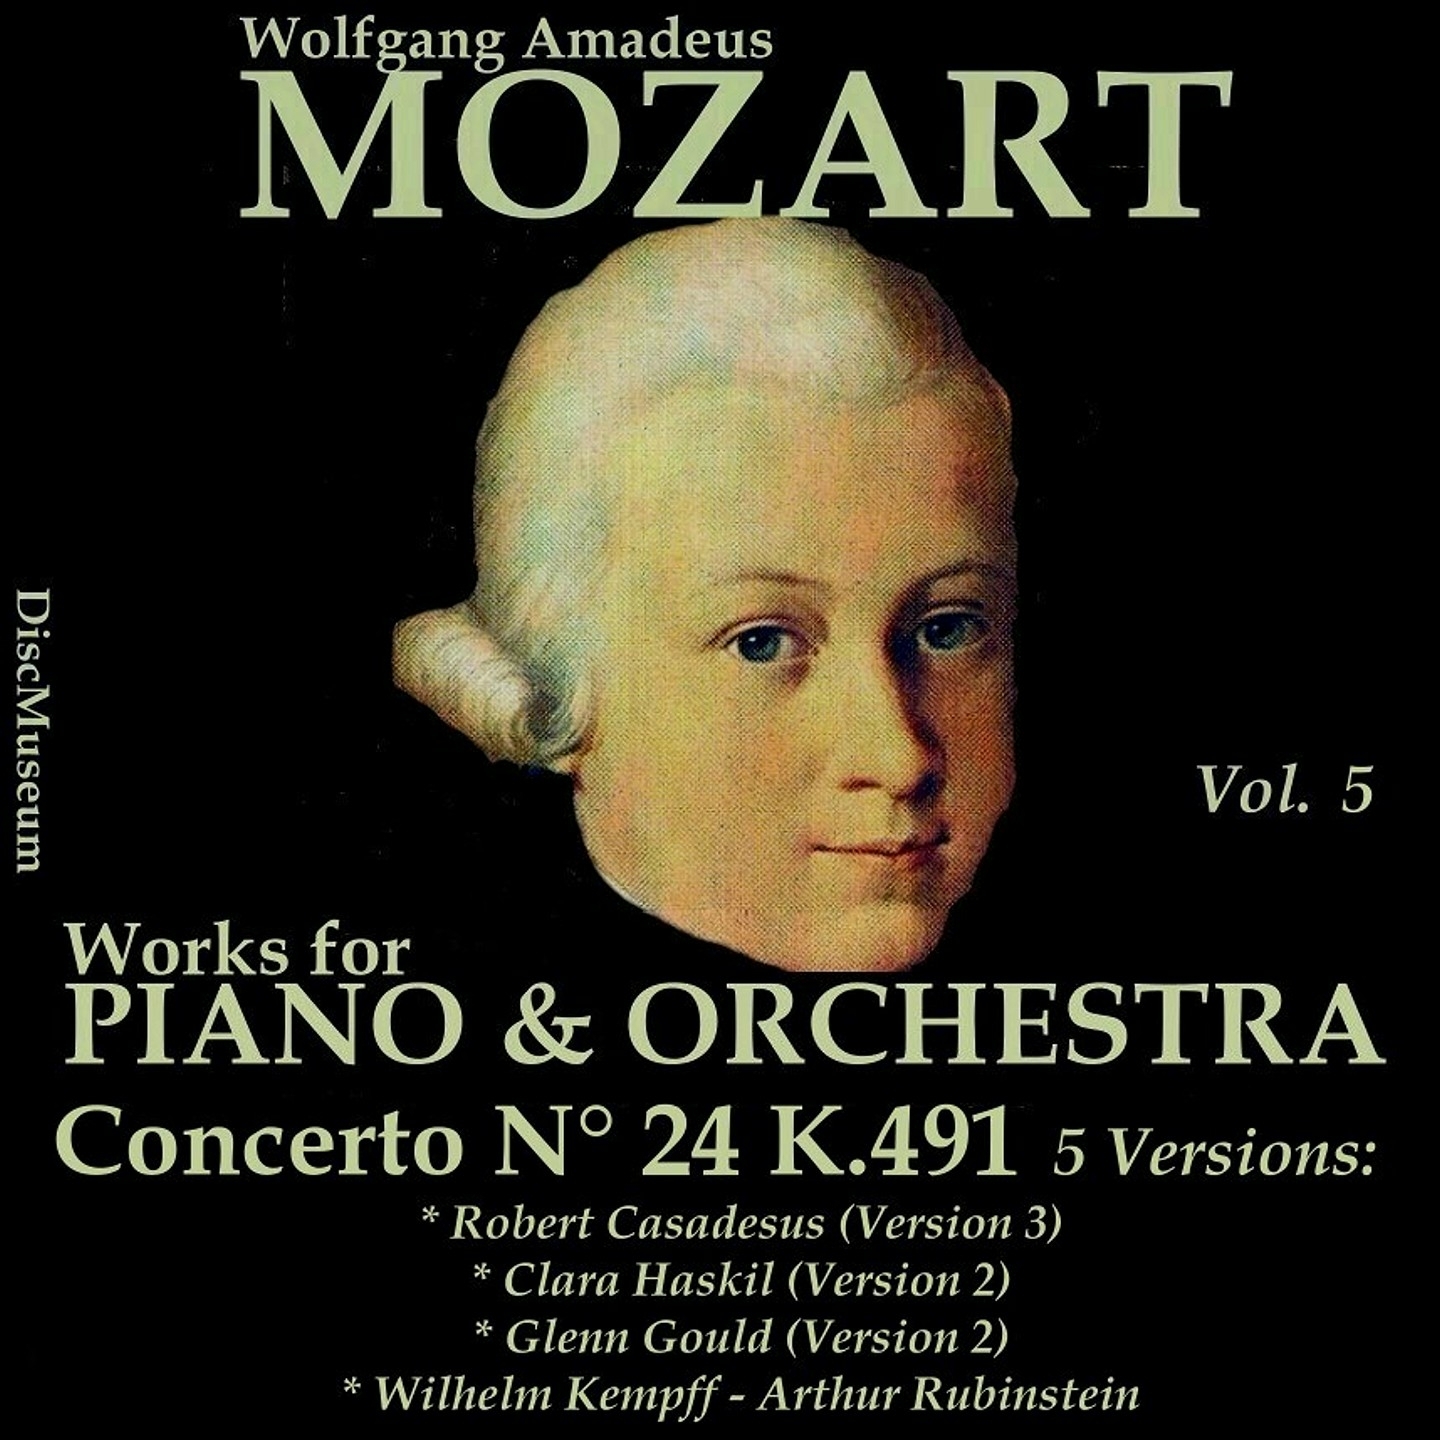 Concerto No. 24 for Piano and Orchestra in C Minor, K491: III. Allegretto